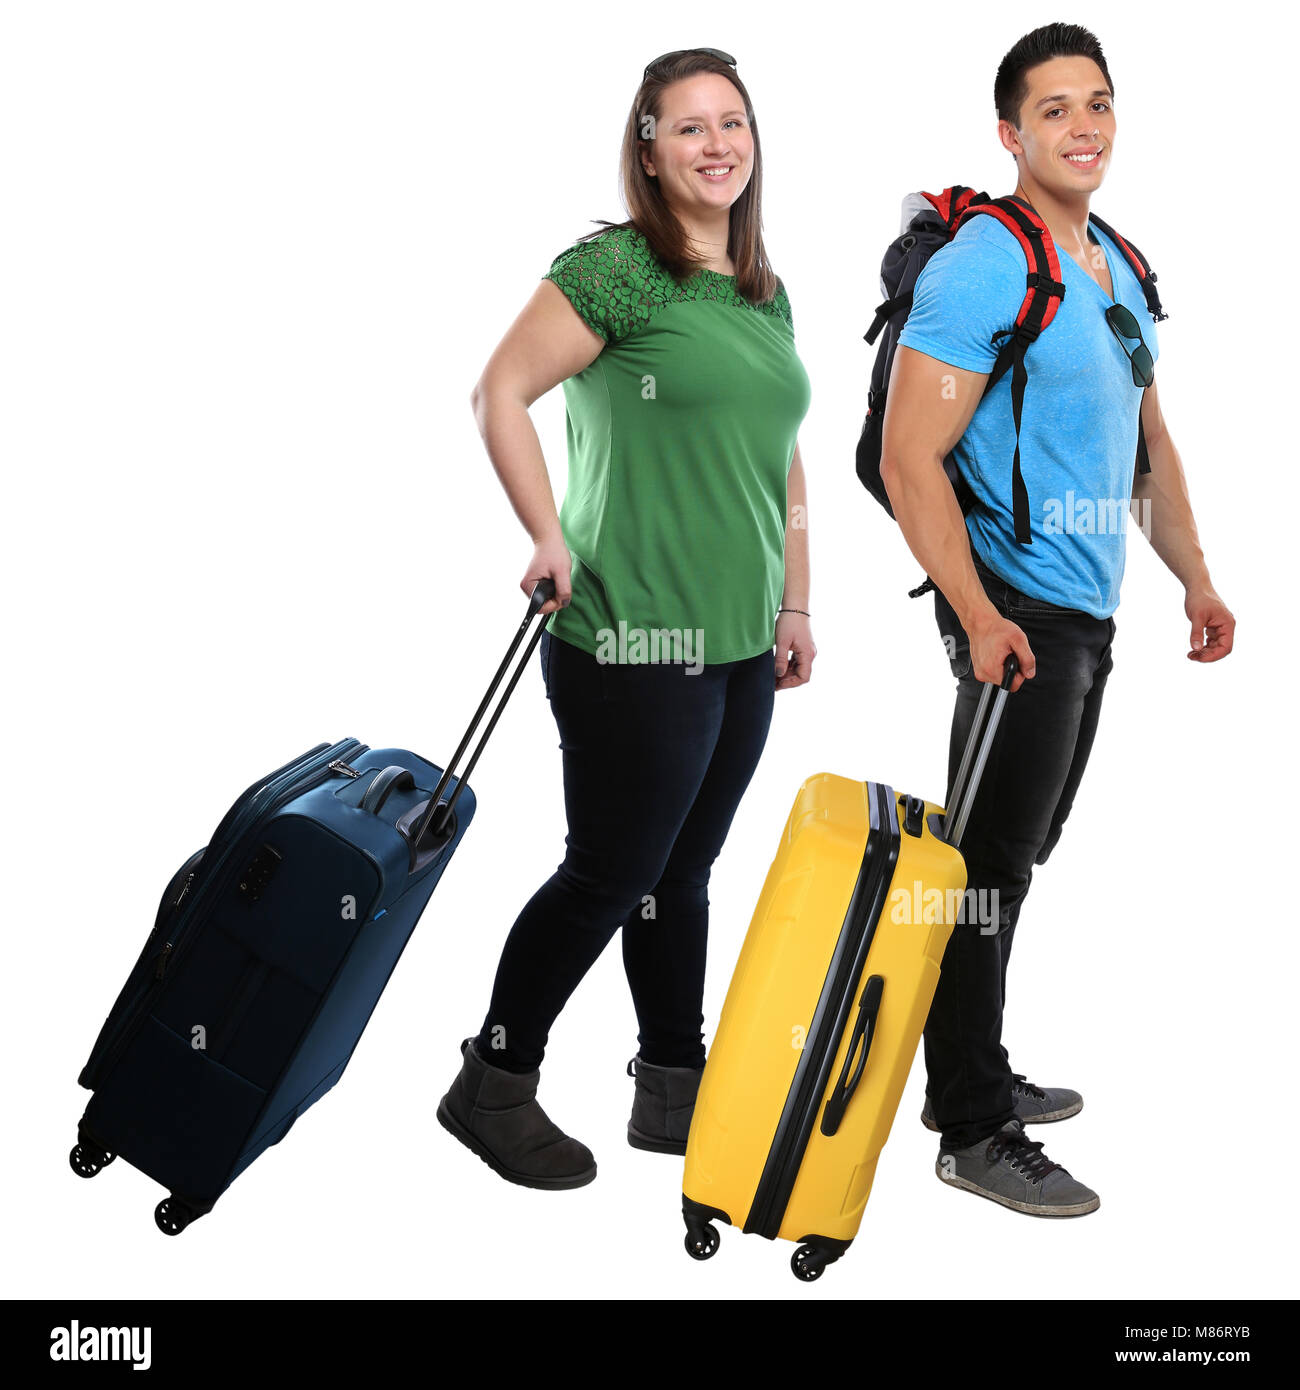 Giovani sacchetto tirando il bagaglio viaggio viaggi vacanza vacanze sorridenti isolato su uno sfondo bianco Foto Stock